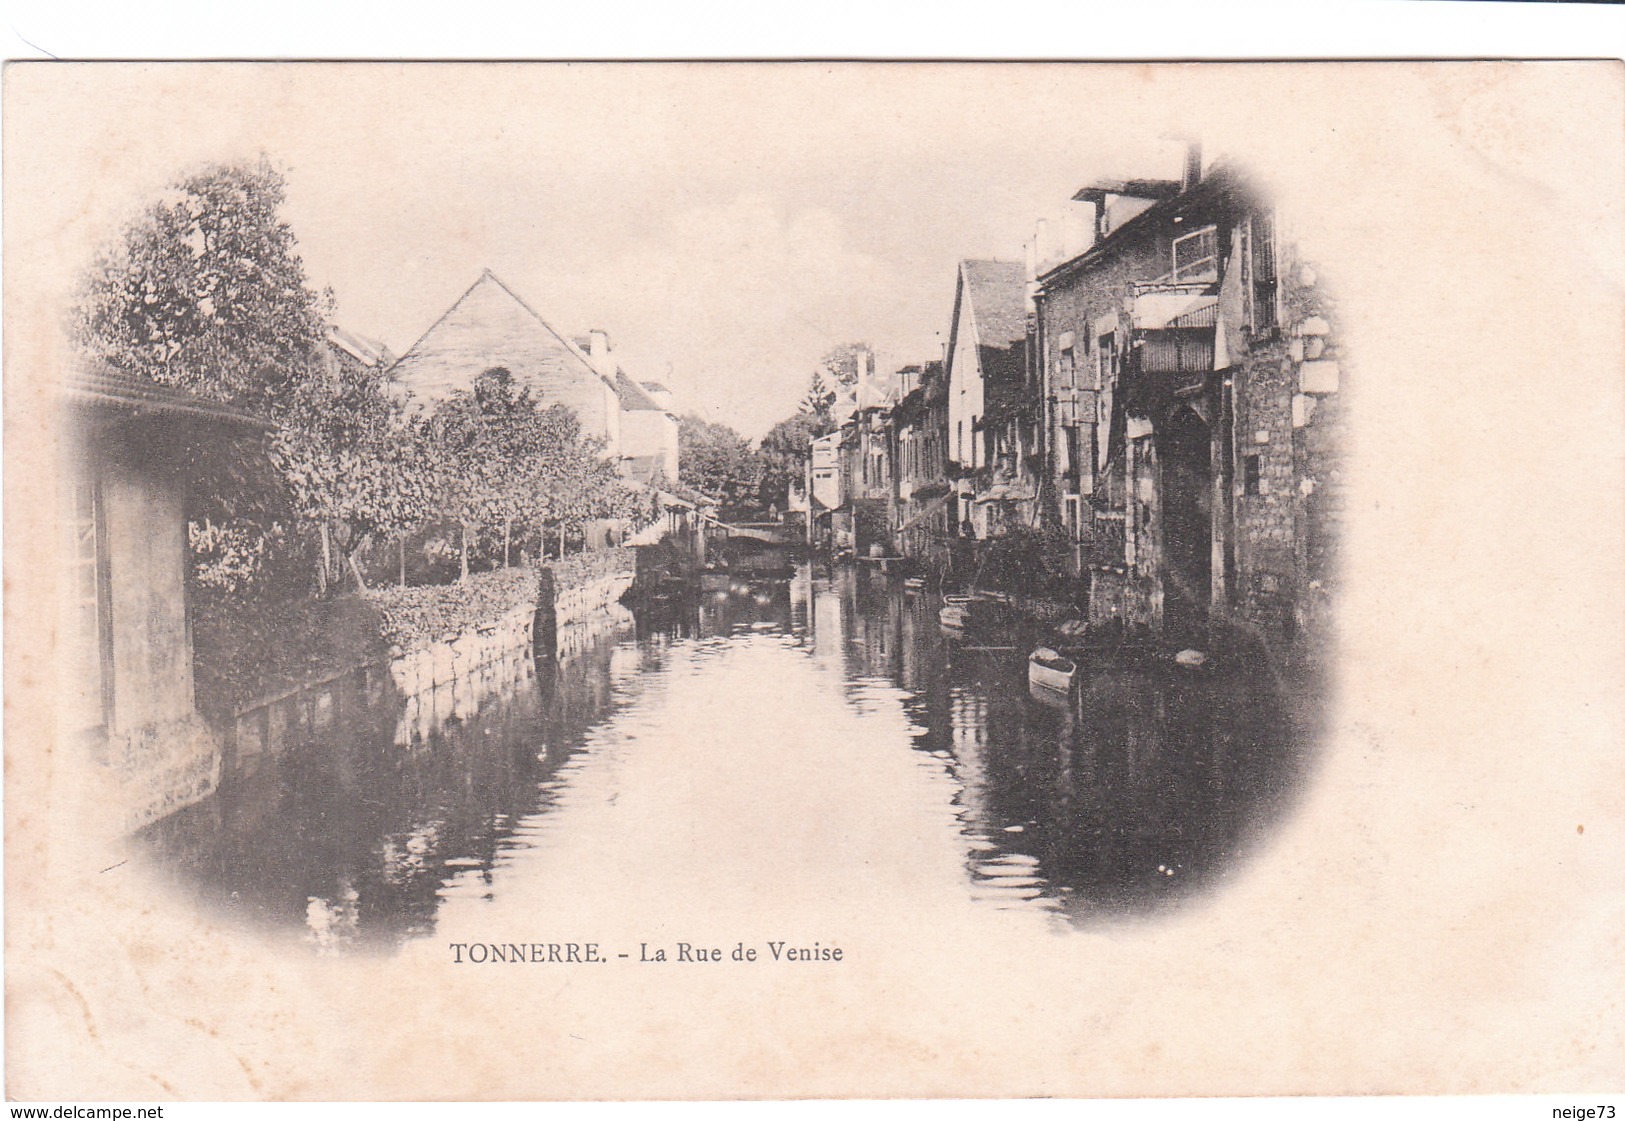 Carte Postale Ancienne De L'Yonne - Tonnerre - La Rue De Venise - Vers 1900 - Tonnerre